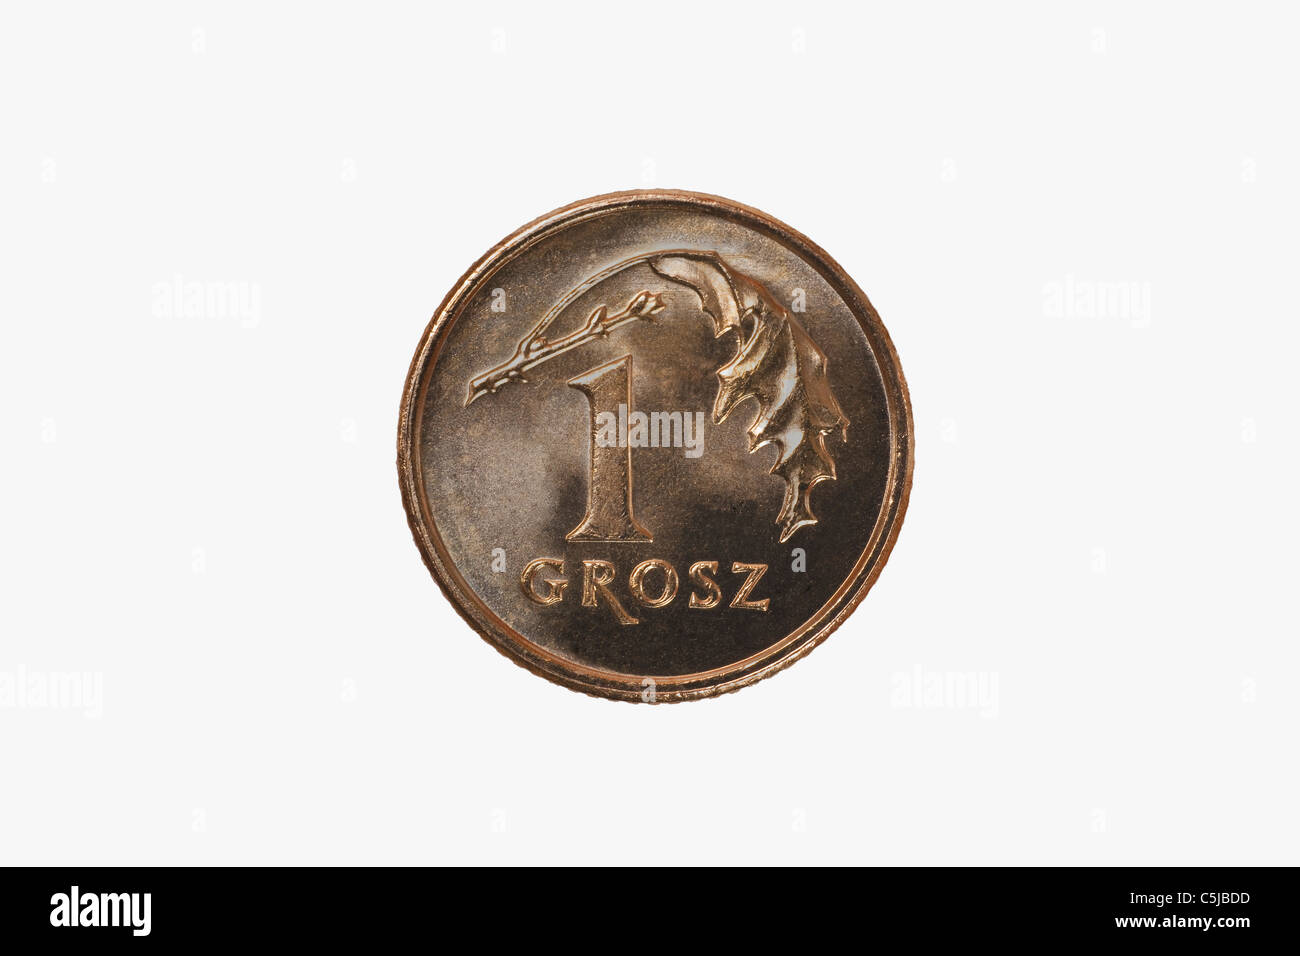 Detailansicht der kleinsten polnischen Münze 1 Grosz | Detail photo of the smallest polish coin, 1 Grosz Stock Photo